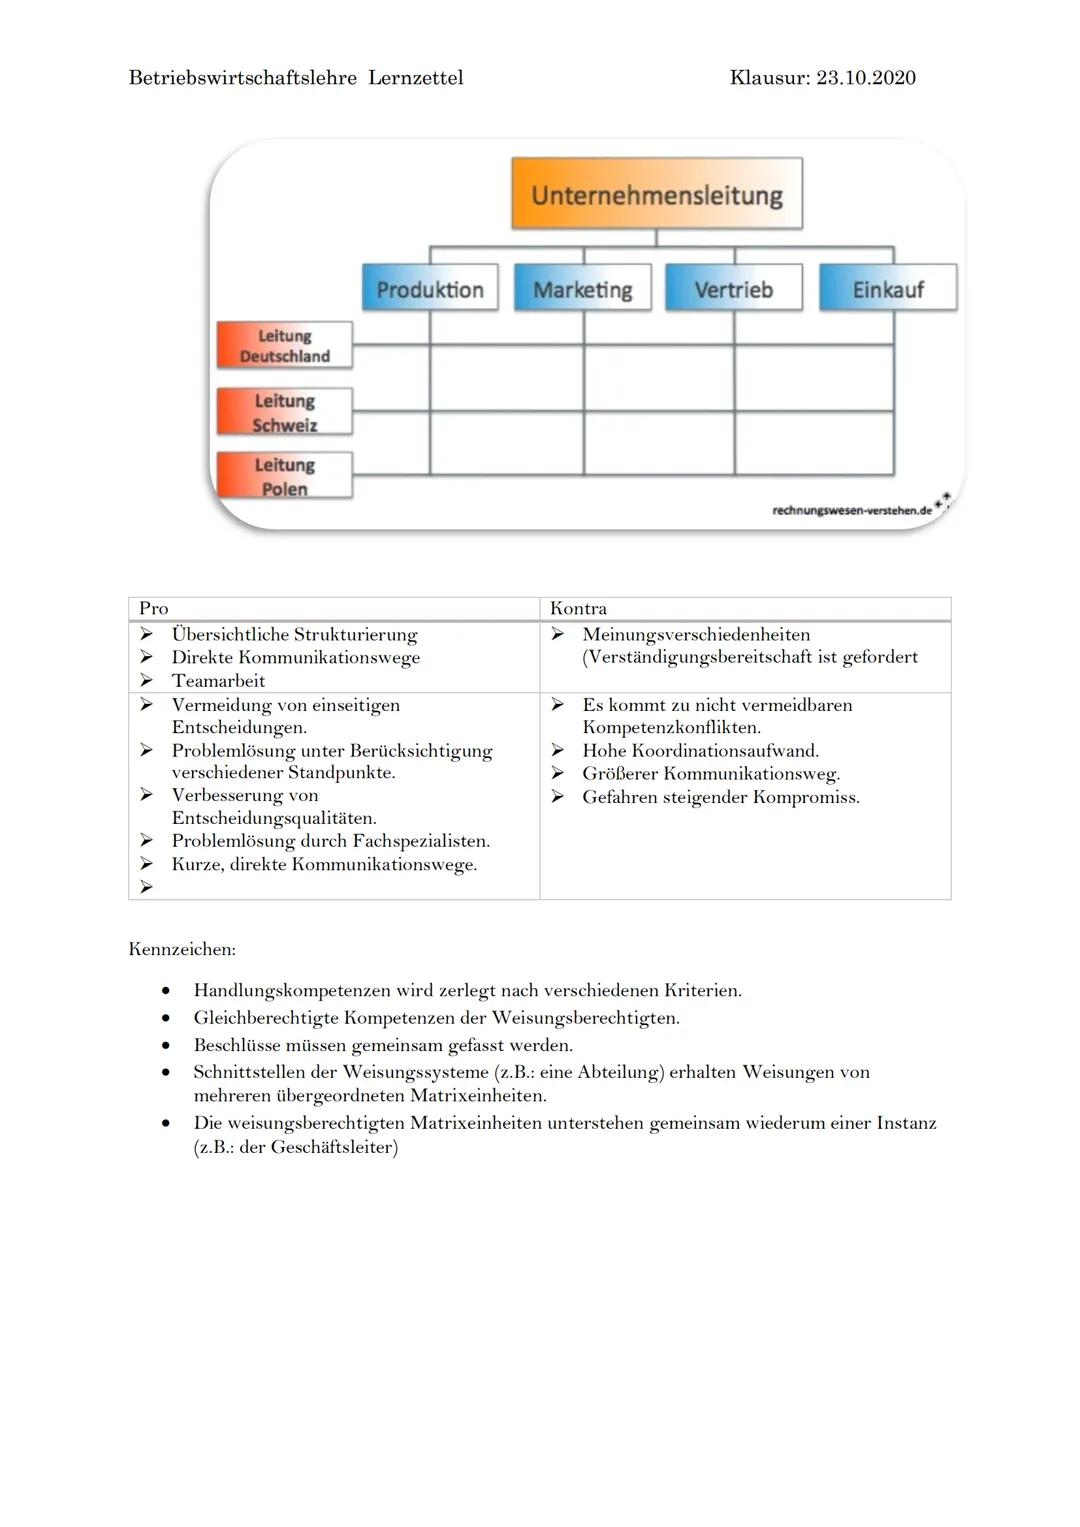 Betriebswirtschaftslehre Lernzettel
Organisationsformen:
Einliniensystem
Pro
Klare Kompetenzen
➤ Klare Kommunikationswege
Überblick der Leit